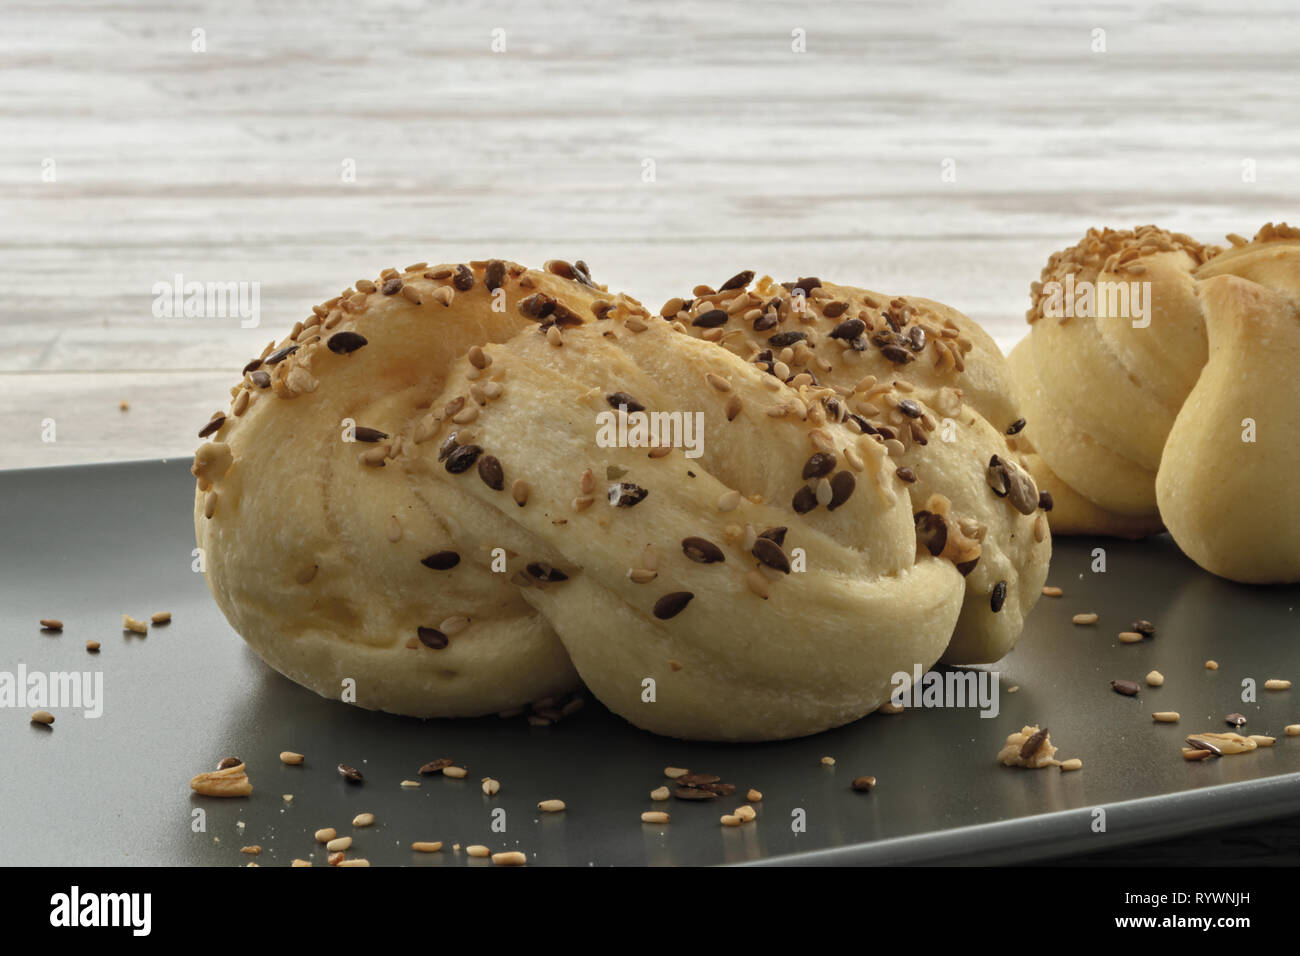 pane italiano con seme vari su vassoio scuro primo piano altra vista da primo piano Stock Photo